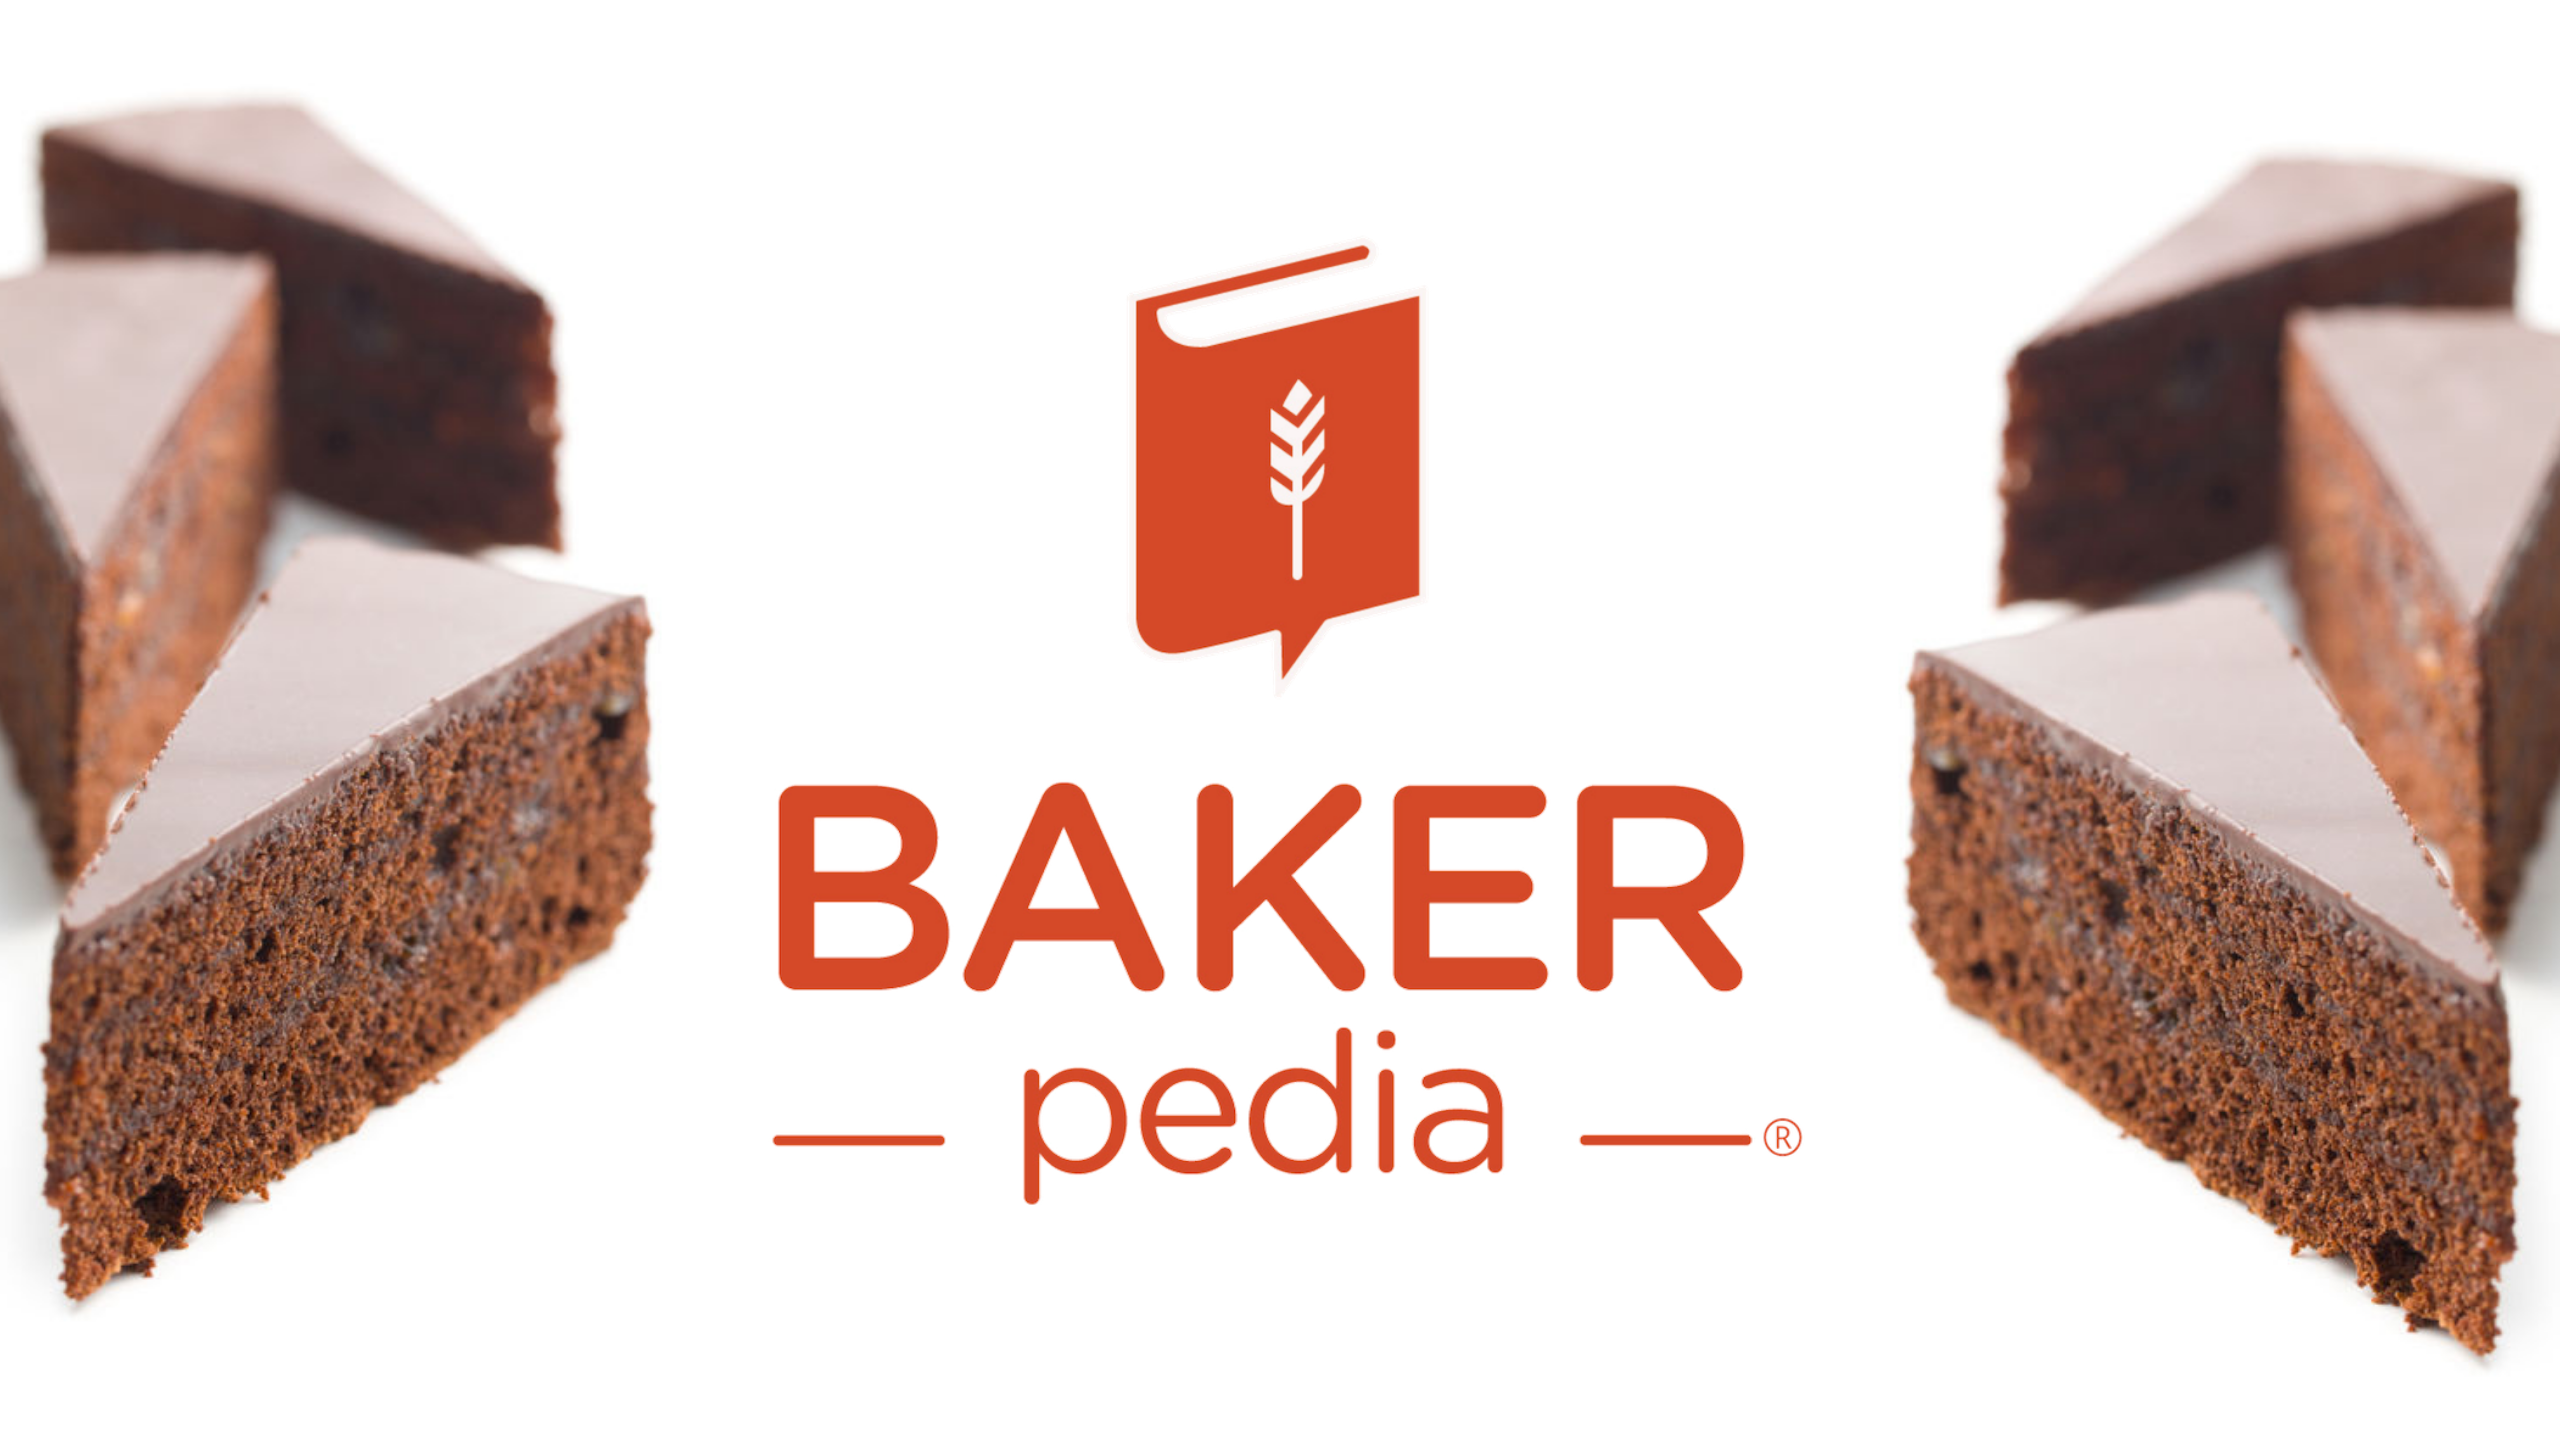 BAKERpedia: Khám phá thế giới bánh mỳ với BAKERpedia - nguồn tài nguyên đầy đủ nhất về công nghệ làm bánh trên toàn thế giới. Hãy xem hình ảnh để tìm hiểu những kỹ thuật mới nhất để tạo ra những chiếc bánh tuyệt vời.